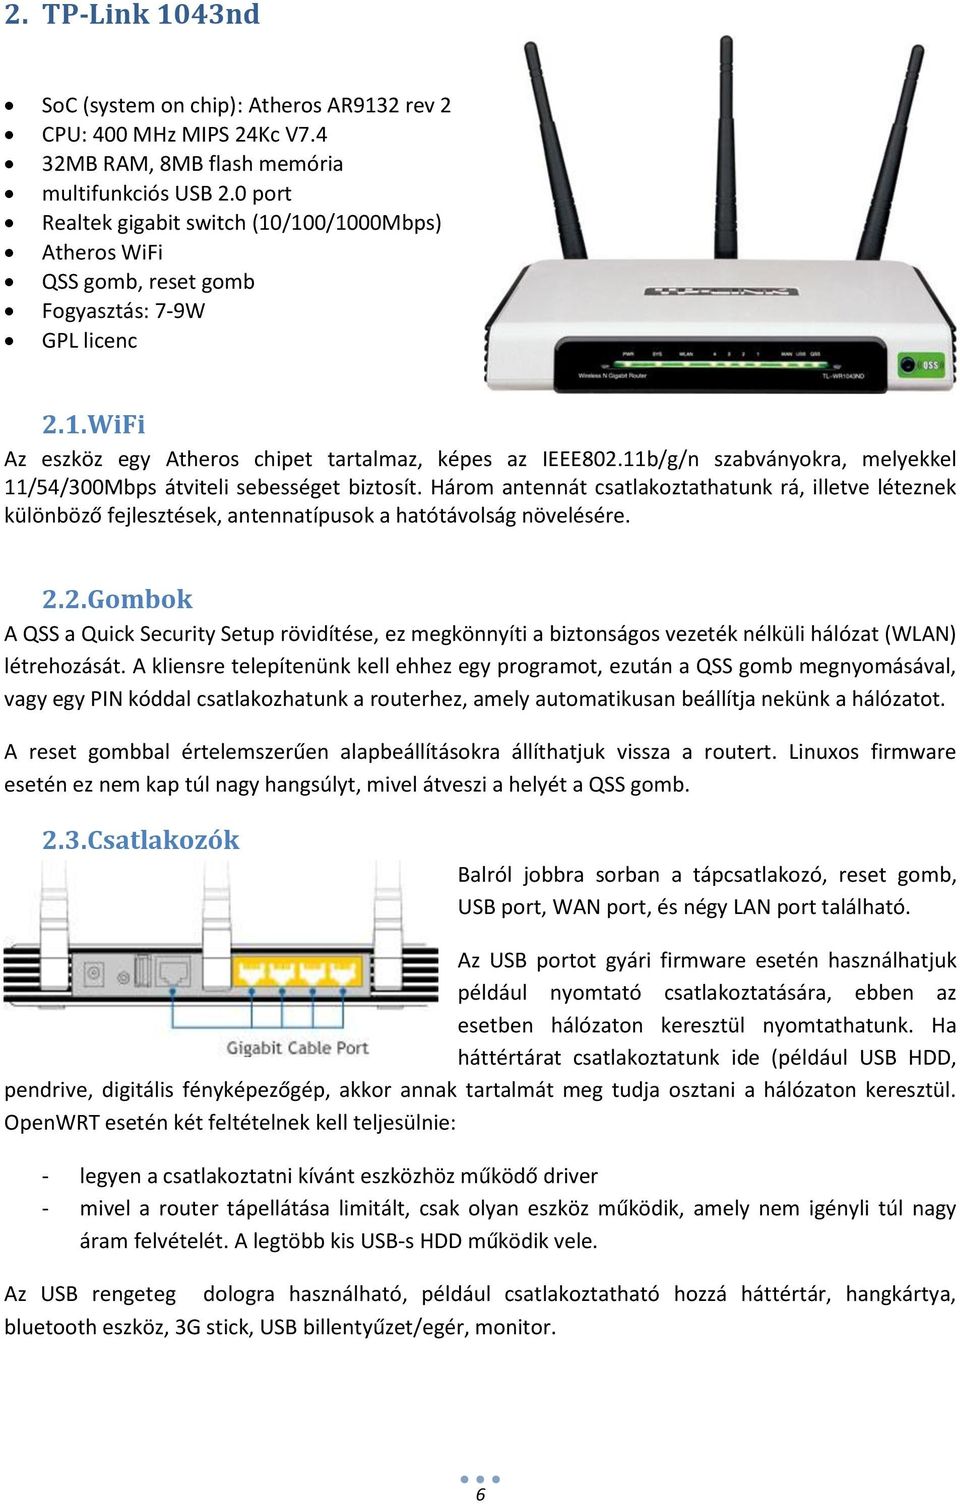 Linux alapú firmware-t futtató router használata otthoni és KKV  környezetben - PDF Ingyenes letöltés